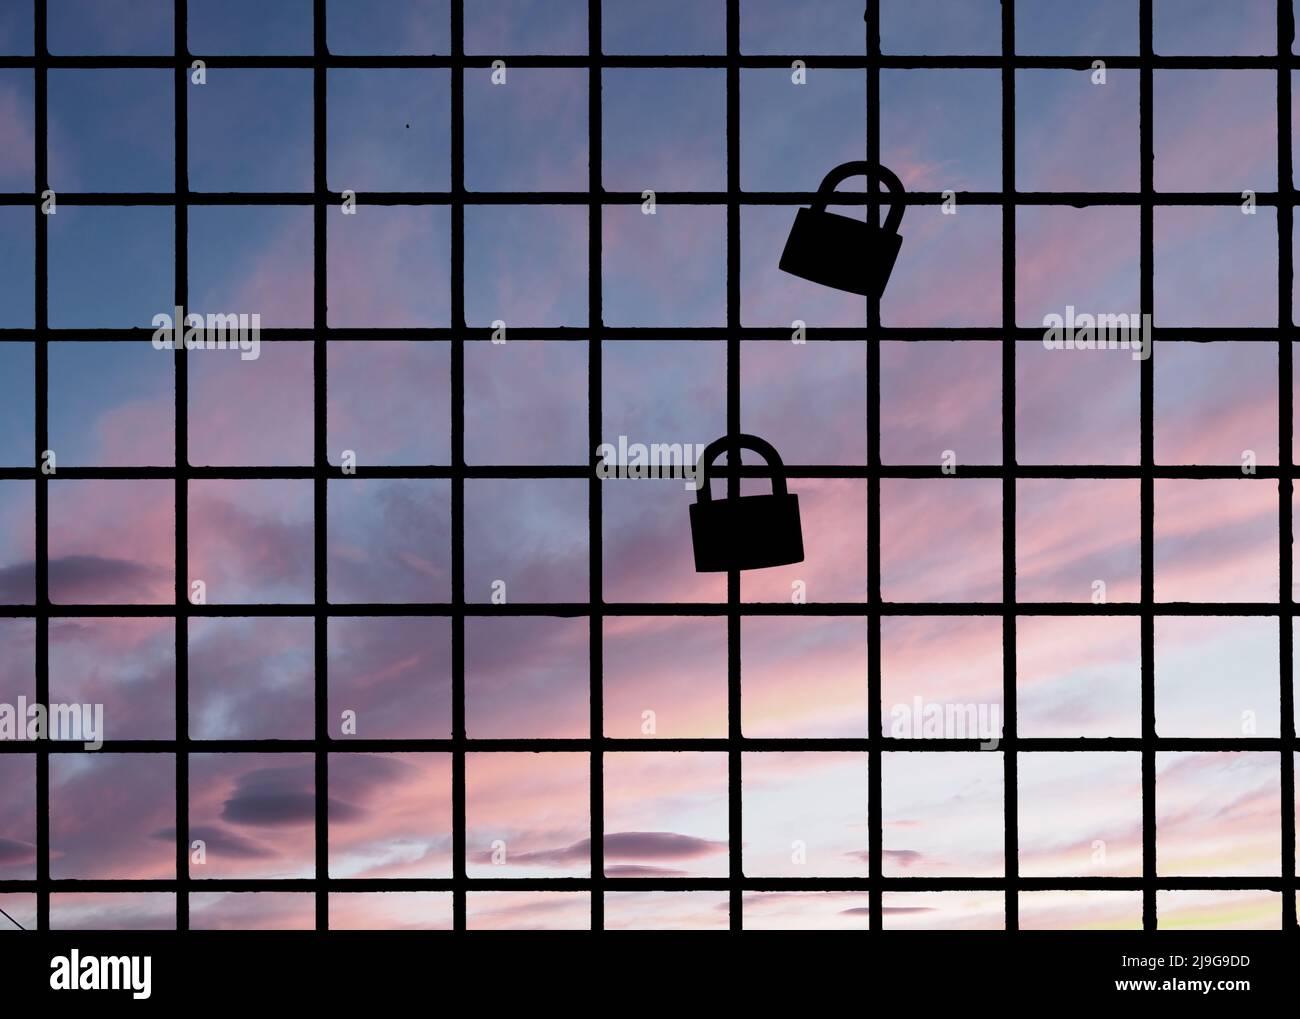 Zwei Vorhängeschlösser am Zaun, Silhouette gegen den Sonnenuntergang. Traditionelles Liebessymbol. Stockfoto